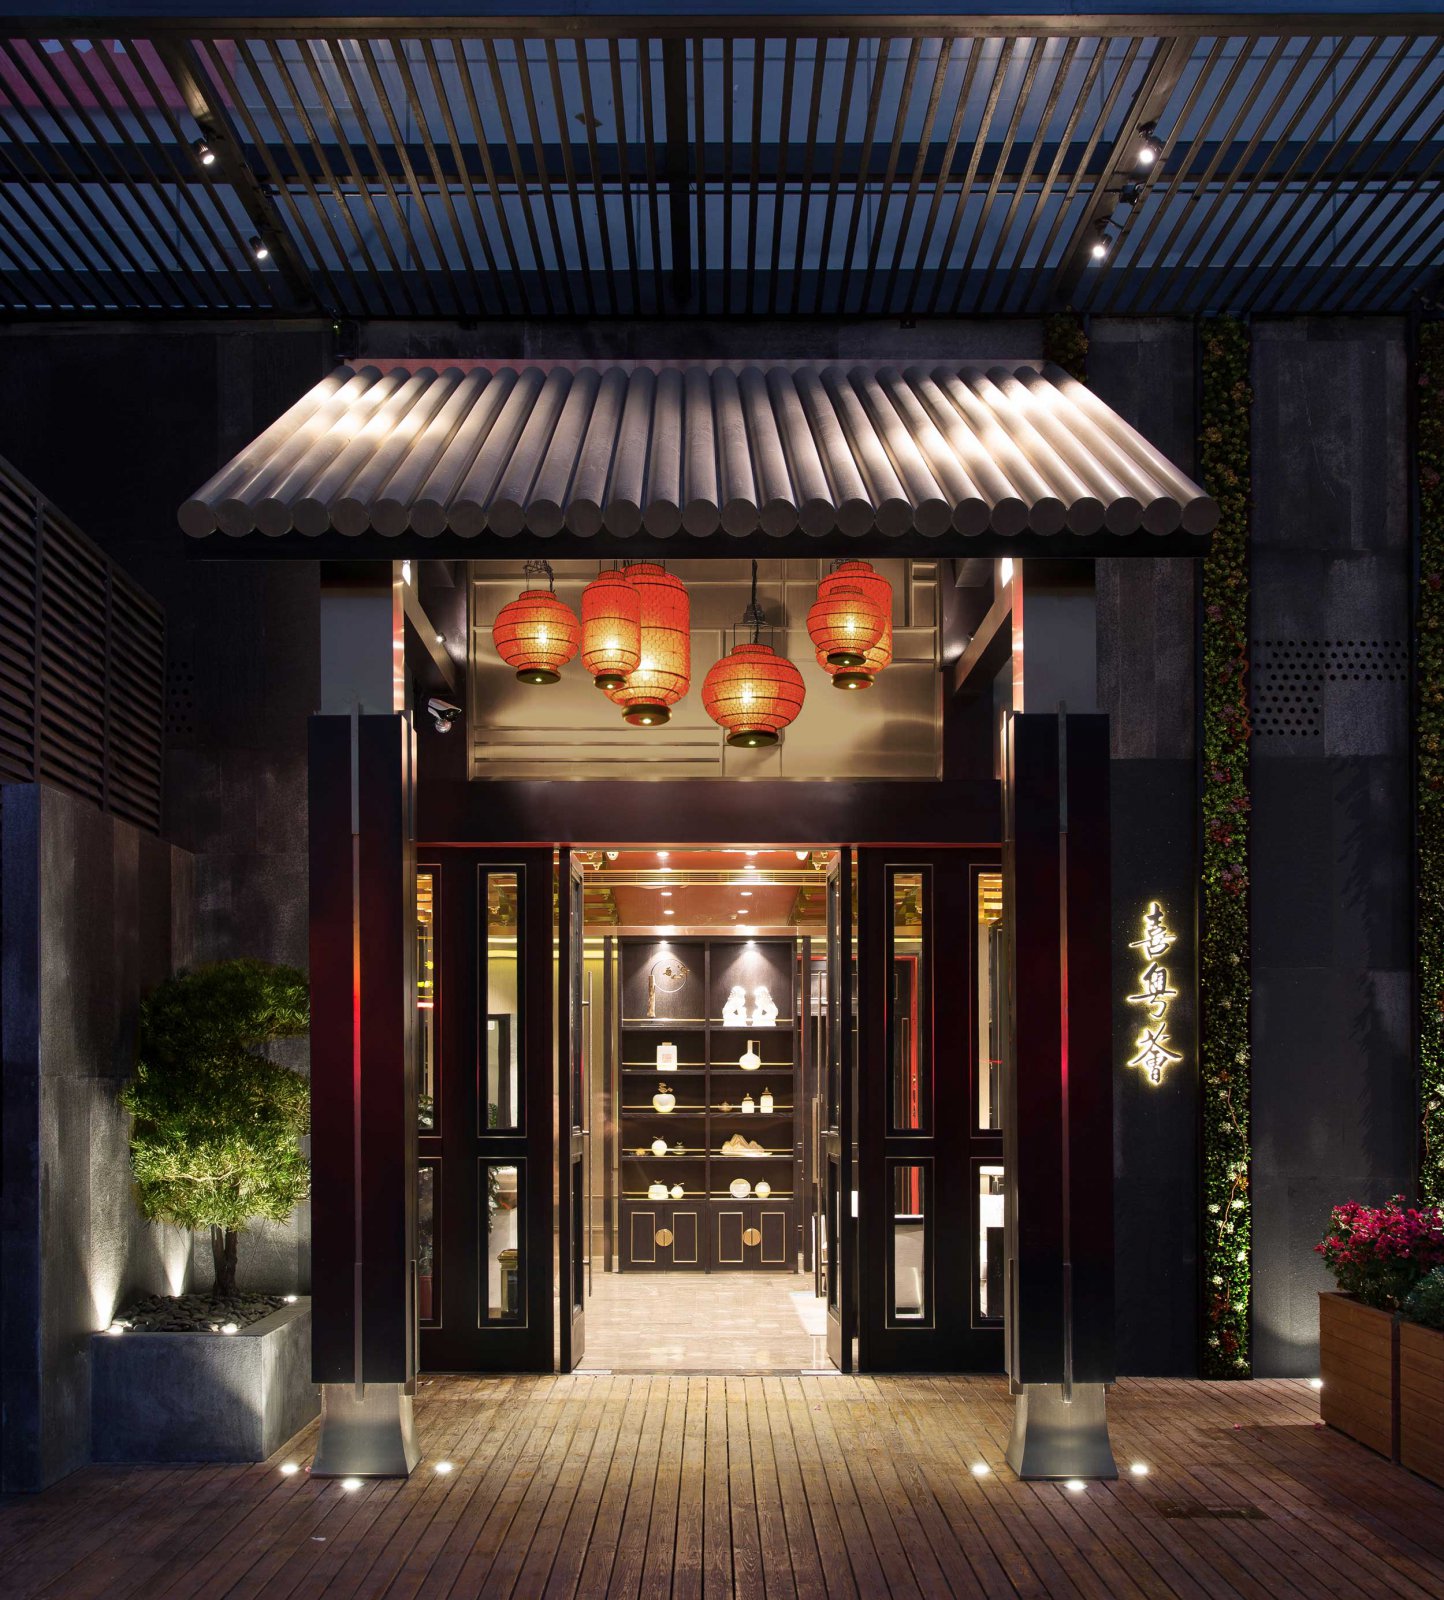 新中式酒楼入口外观装修效果图